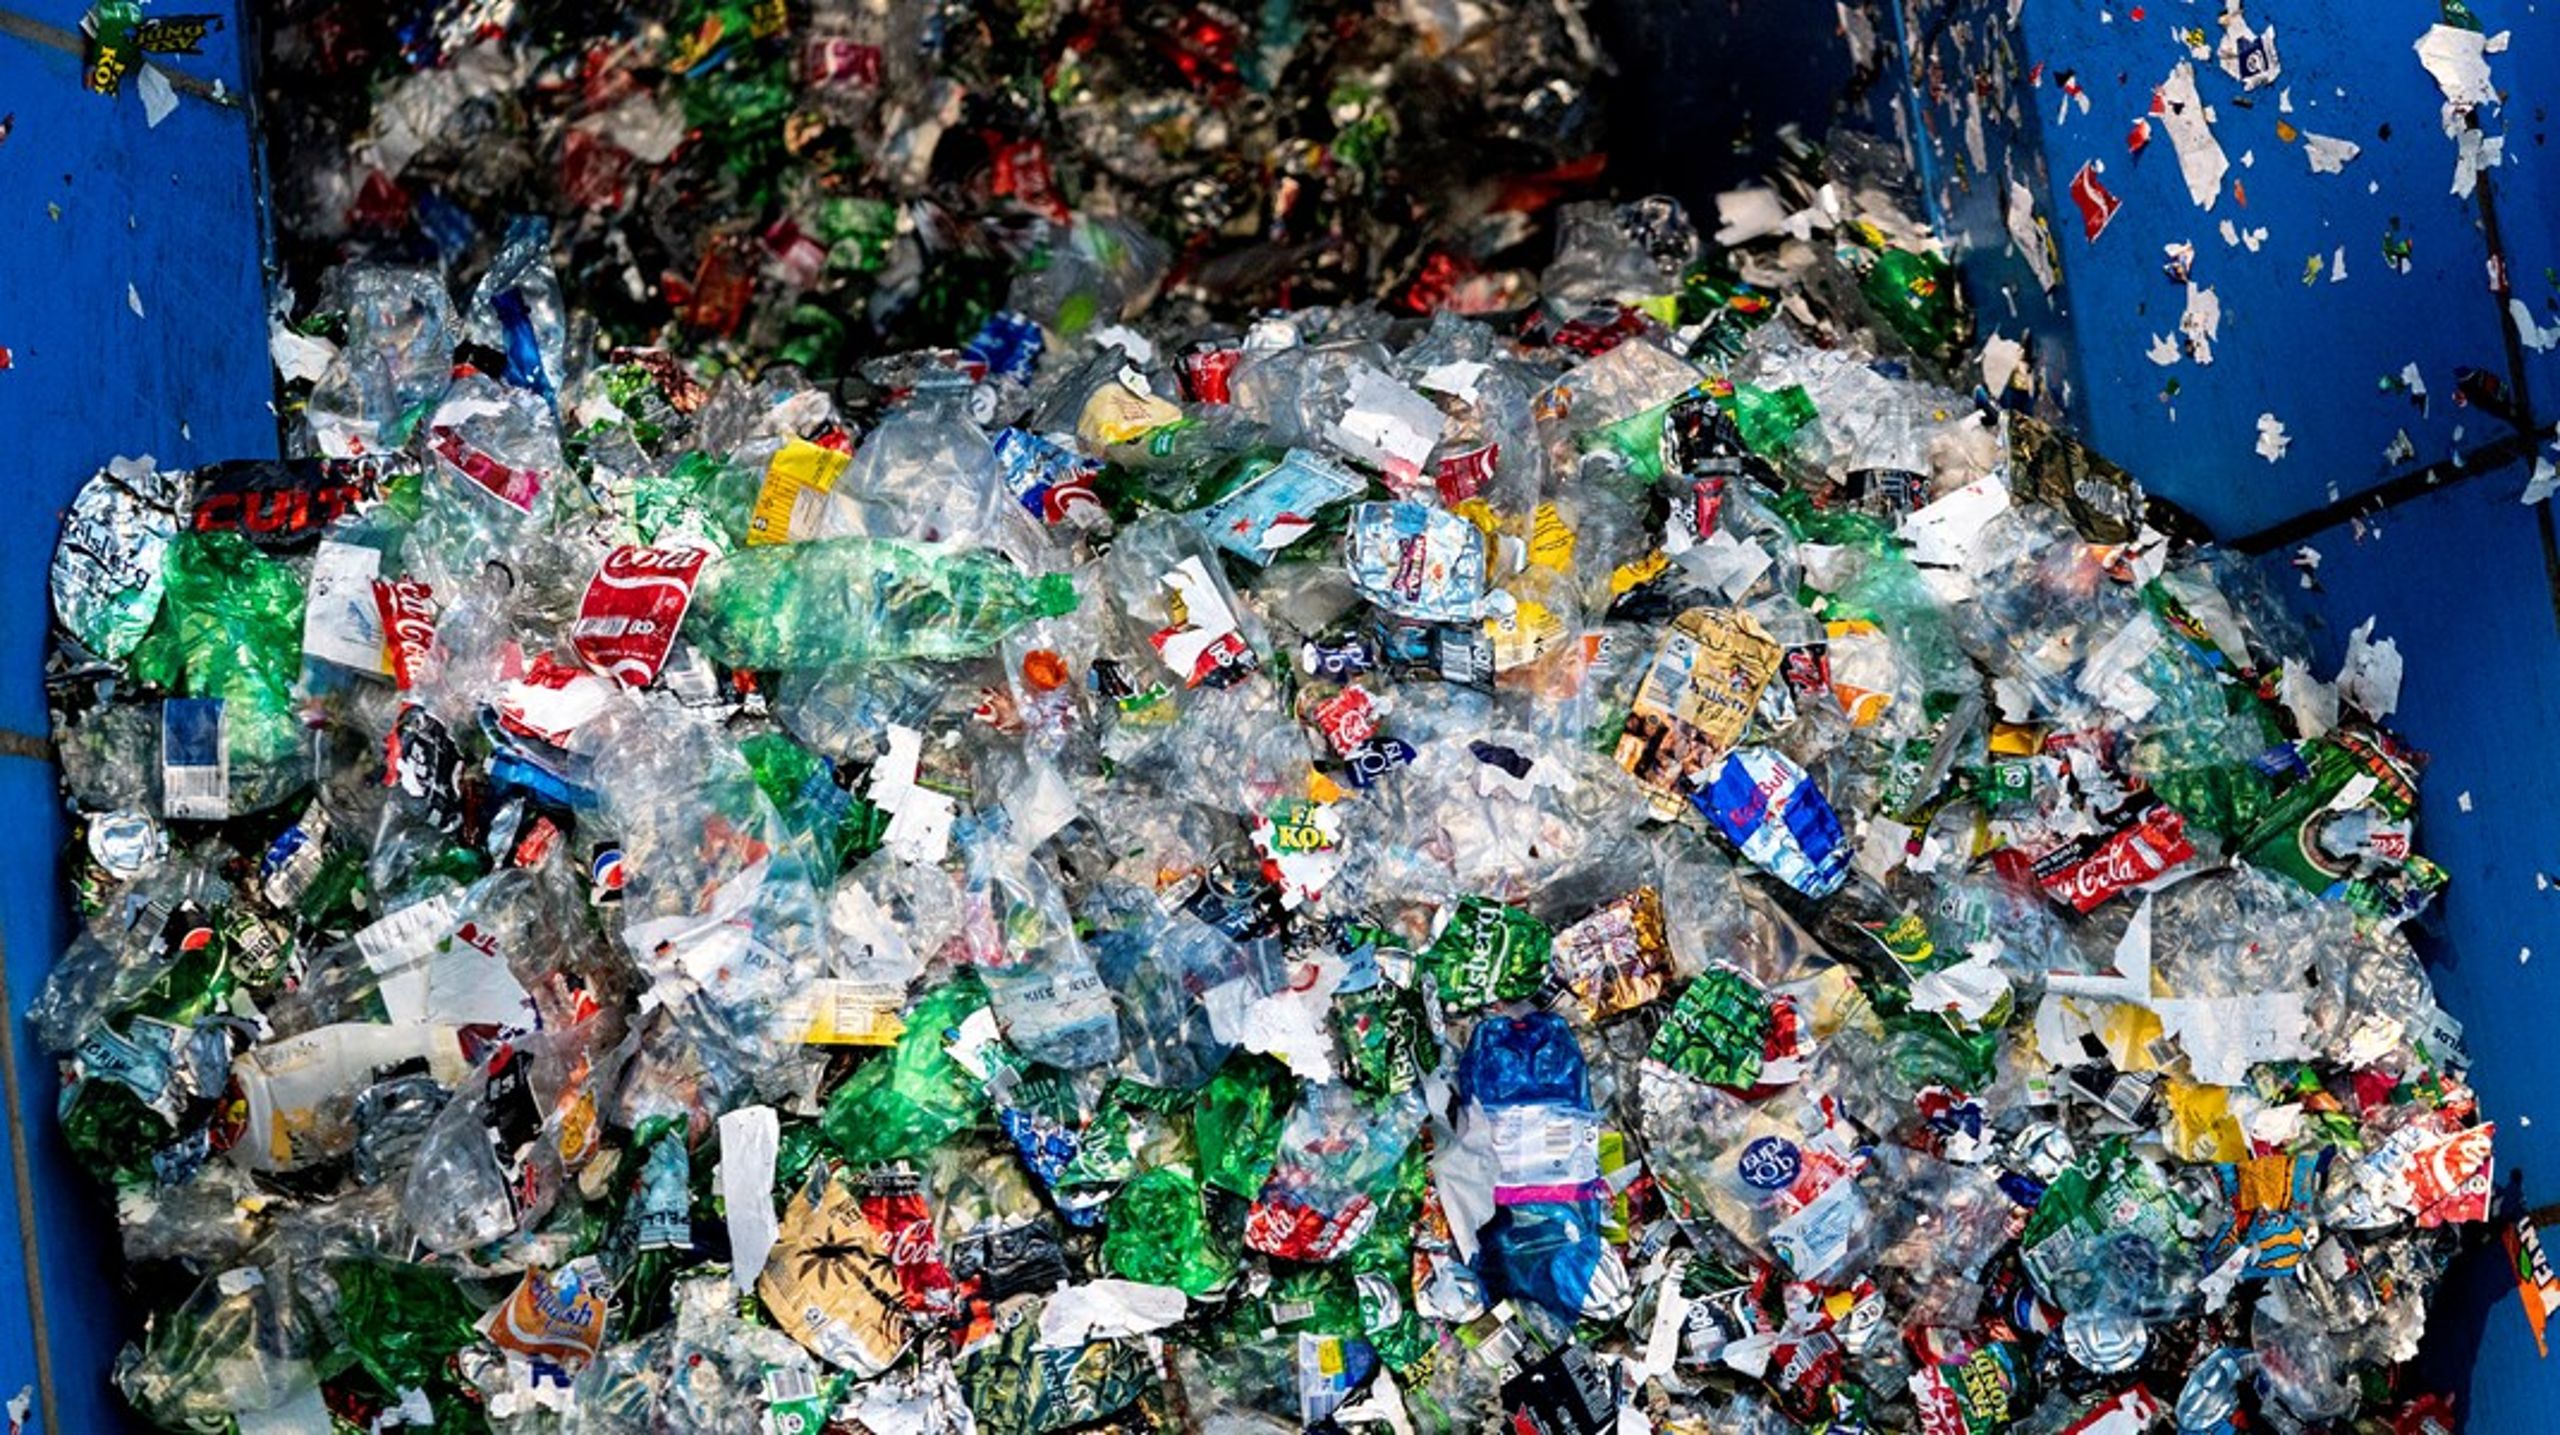 Vi skal blive bedre til at genanvende plastik, hvis vi skal leve op til de nye EU-krav om fremtidens emballage, skriver Karin Klitgaard.